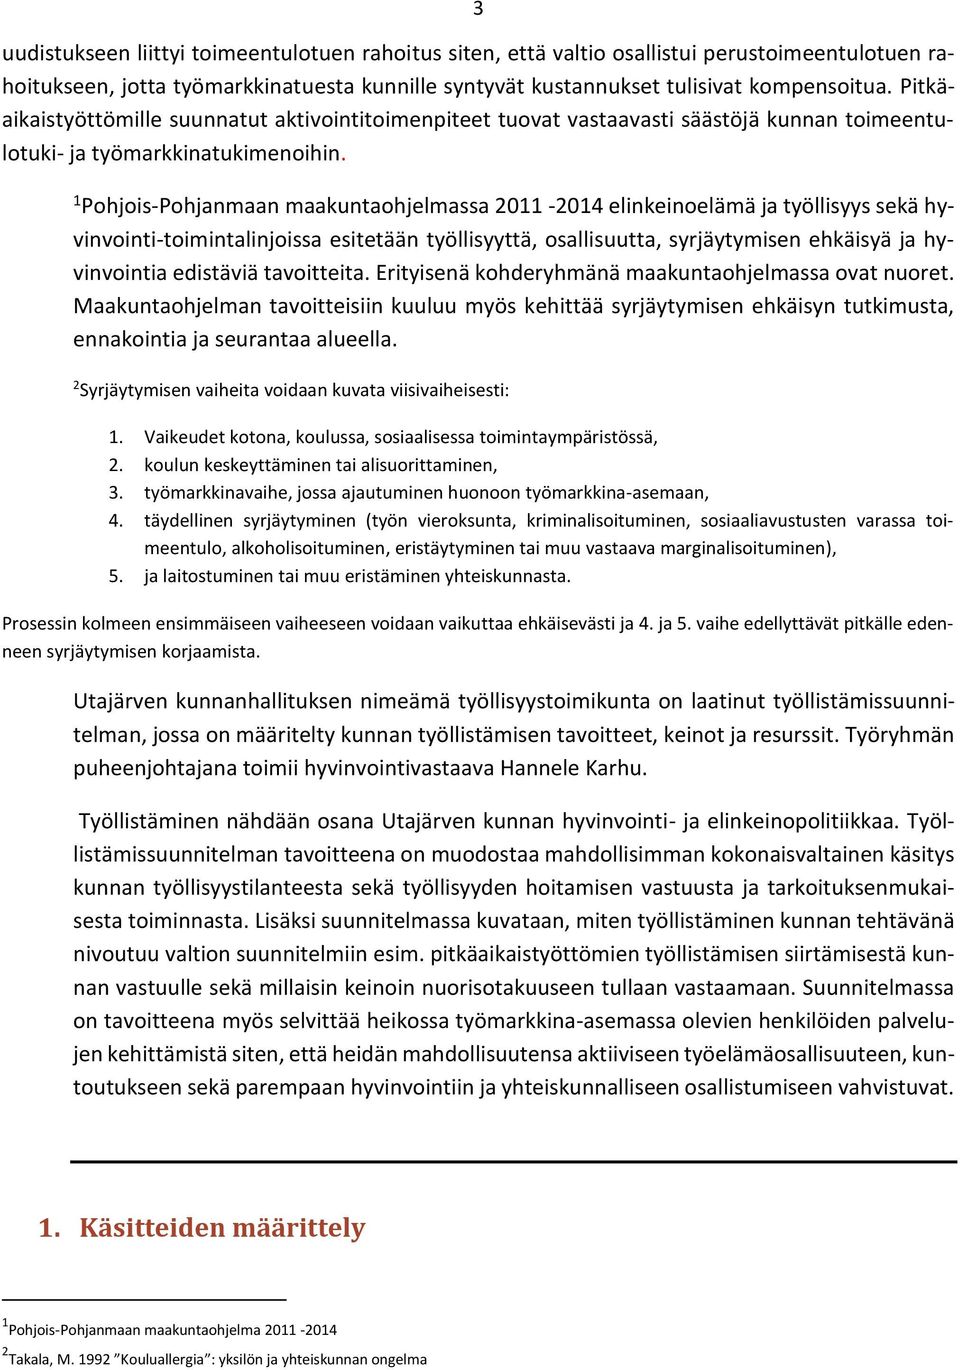 1 Pohjois-Pohjanmaan maakuntaohjelmassa 2011-2014 elinkeinoelämä ja työllisyys sekä hyvinvointi-toimintalinjoissa esitetään työllisyyttä, osallisuutta, syrjäytymisen ehkäisyä ja hyvinvointia